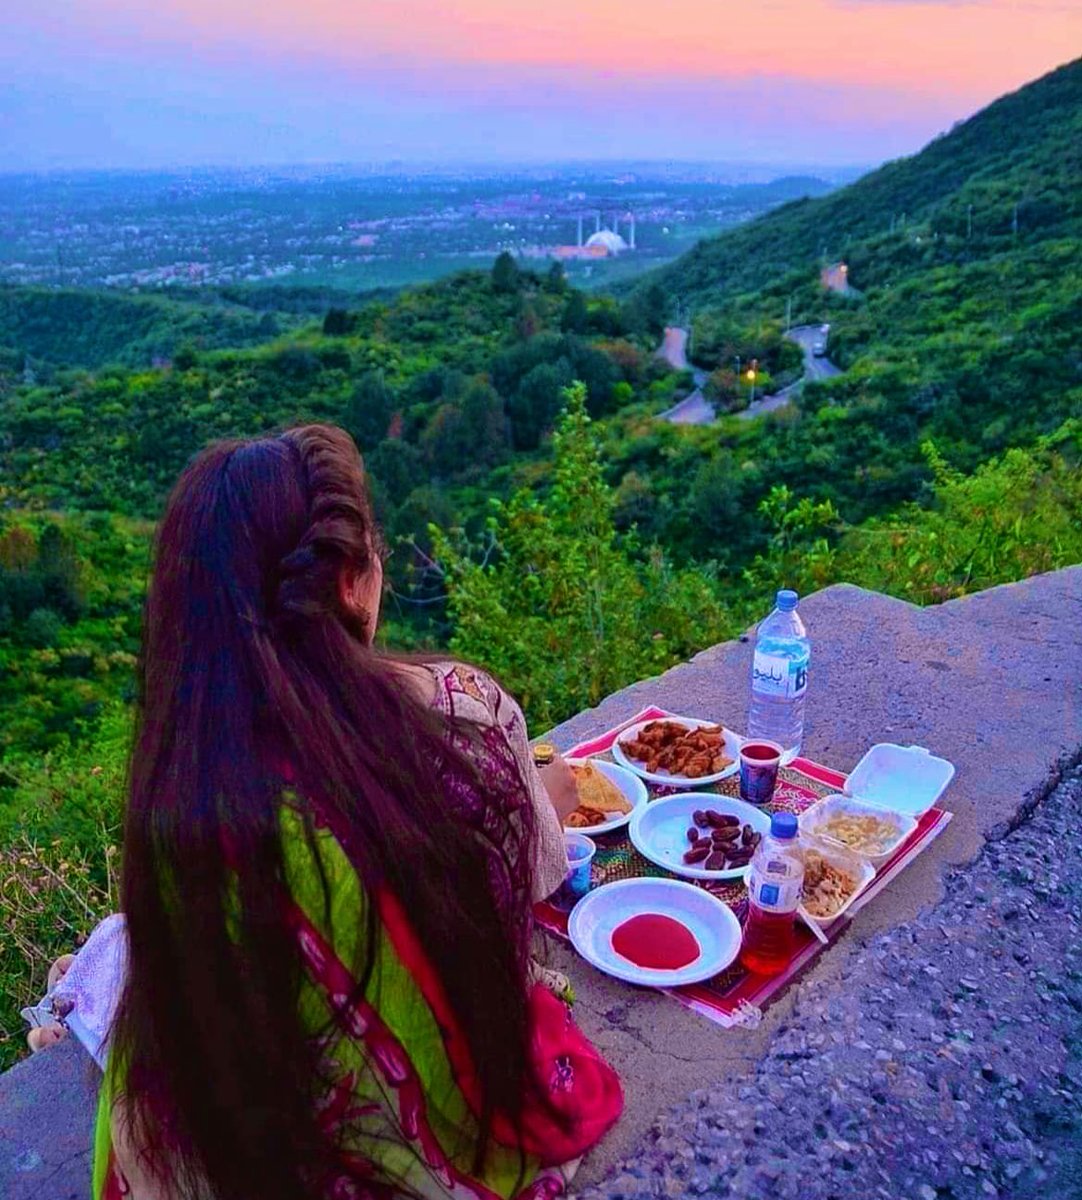 Iftar on Marshalla Hills 🌙🇵🇰❤️ #Ramadan #Iftari #Islamabad #الهلال_النصر #ليفربول #رمضان_كريم #عيد_الفطر_المبارك #عيد_الفطر #السعودية #وزارة_الإعلام